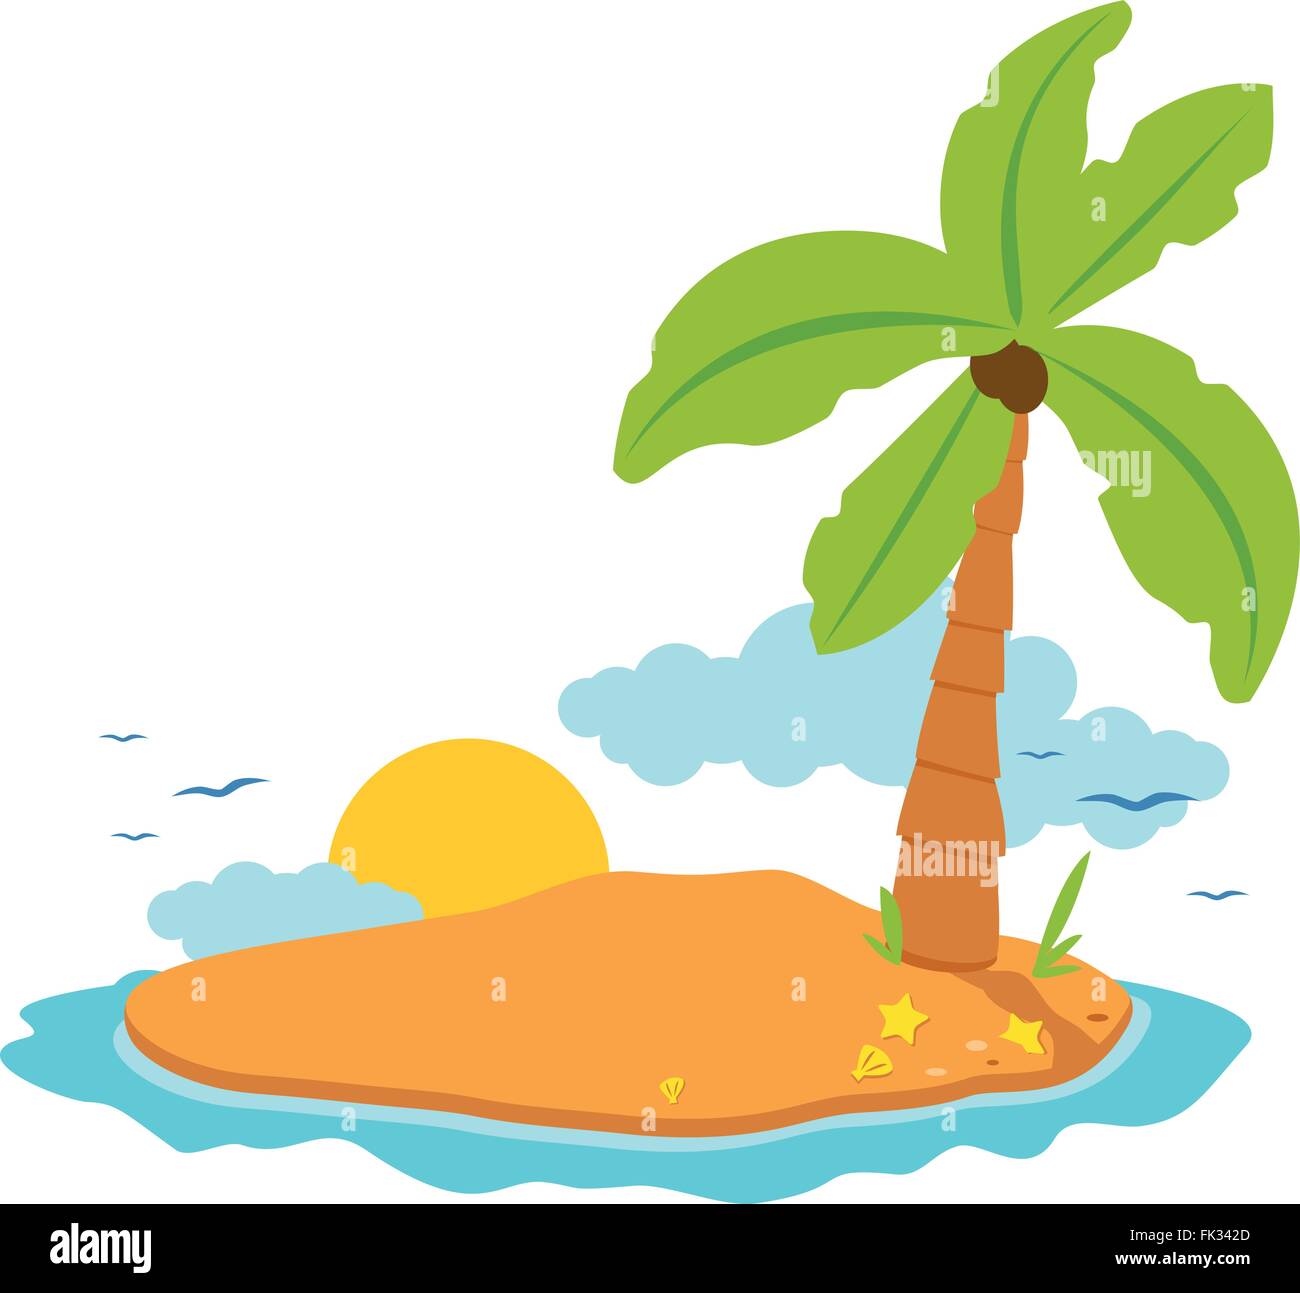 Eine einsame Insel mit einer Kokospalme Baum, Sonne und Meer-Granaten. Stock Vektor